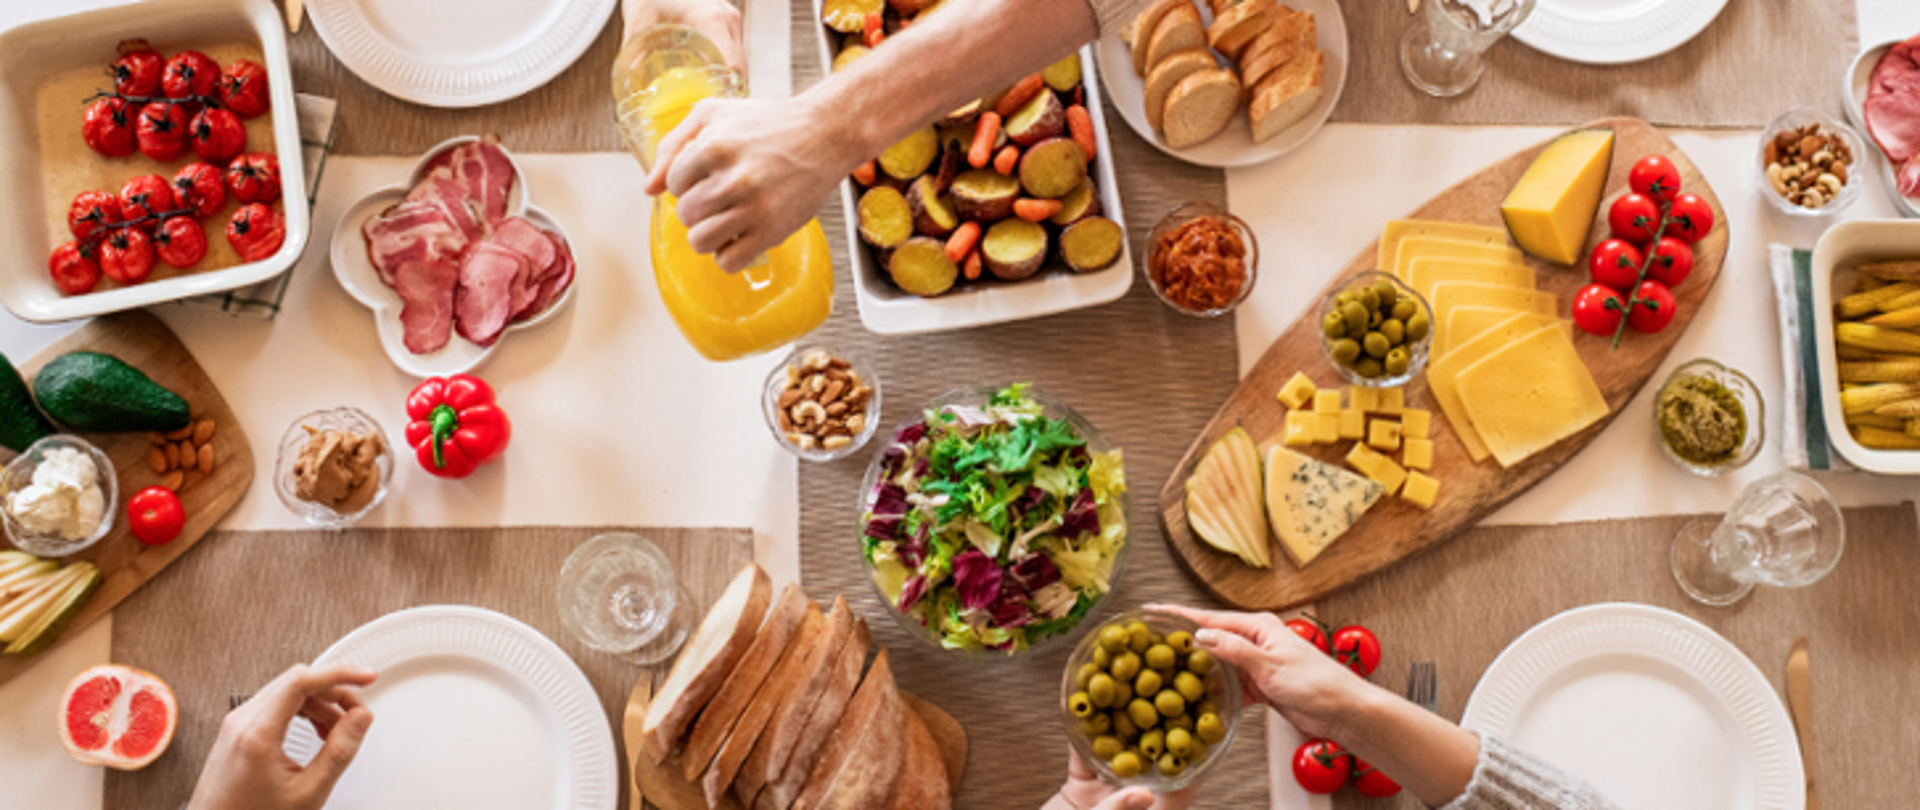 Na zdjęciu znajduje się stół wypełniony żywnością w postaci pieczywa, warzyw, owoców, wartościowych tłuszczy oraz nabiału. Widoczne są również dłonie 3 osób siedzących przy zastawie znajdującej się na stole.